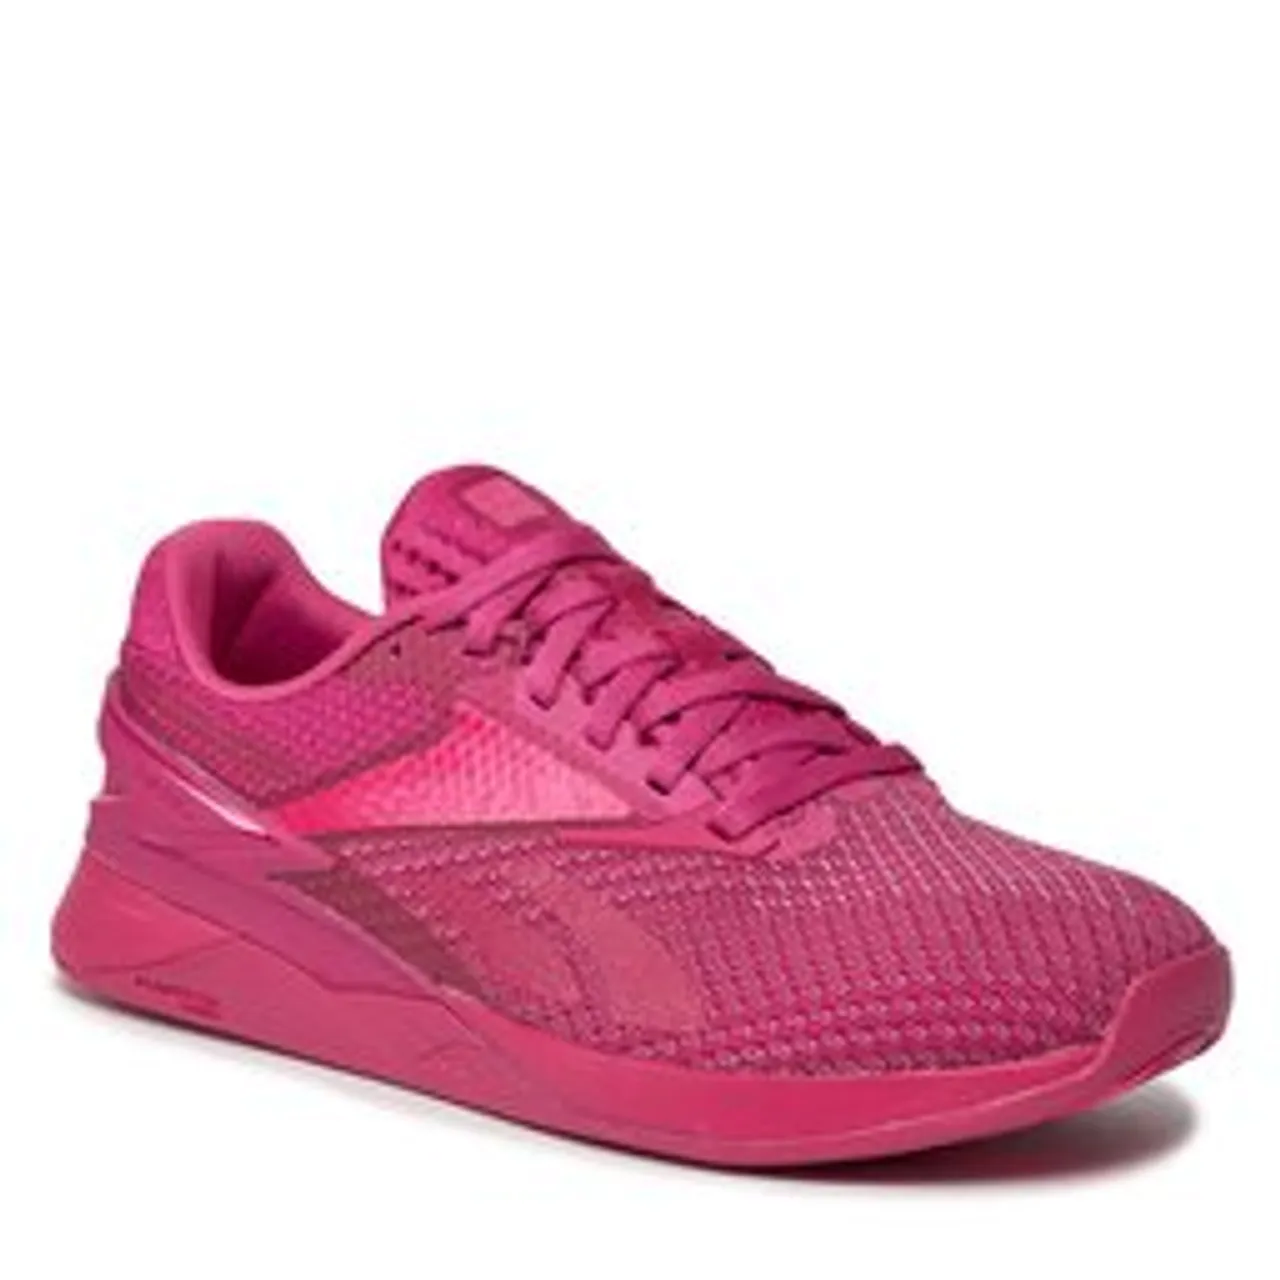 Schuhe Reebok Nano X3 IF6023 Semi Proud Pink/Laser Pink/Semi Proud Pink